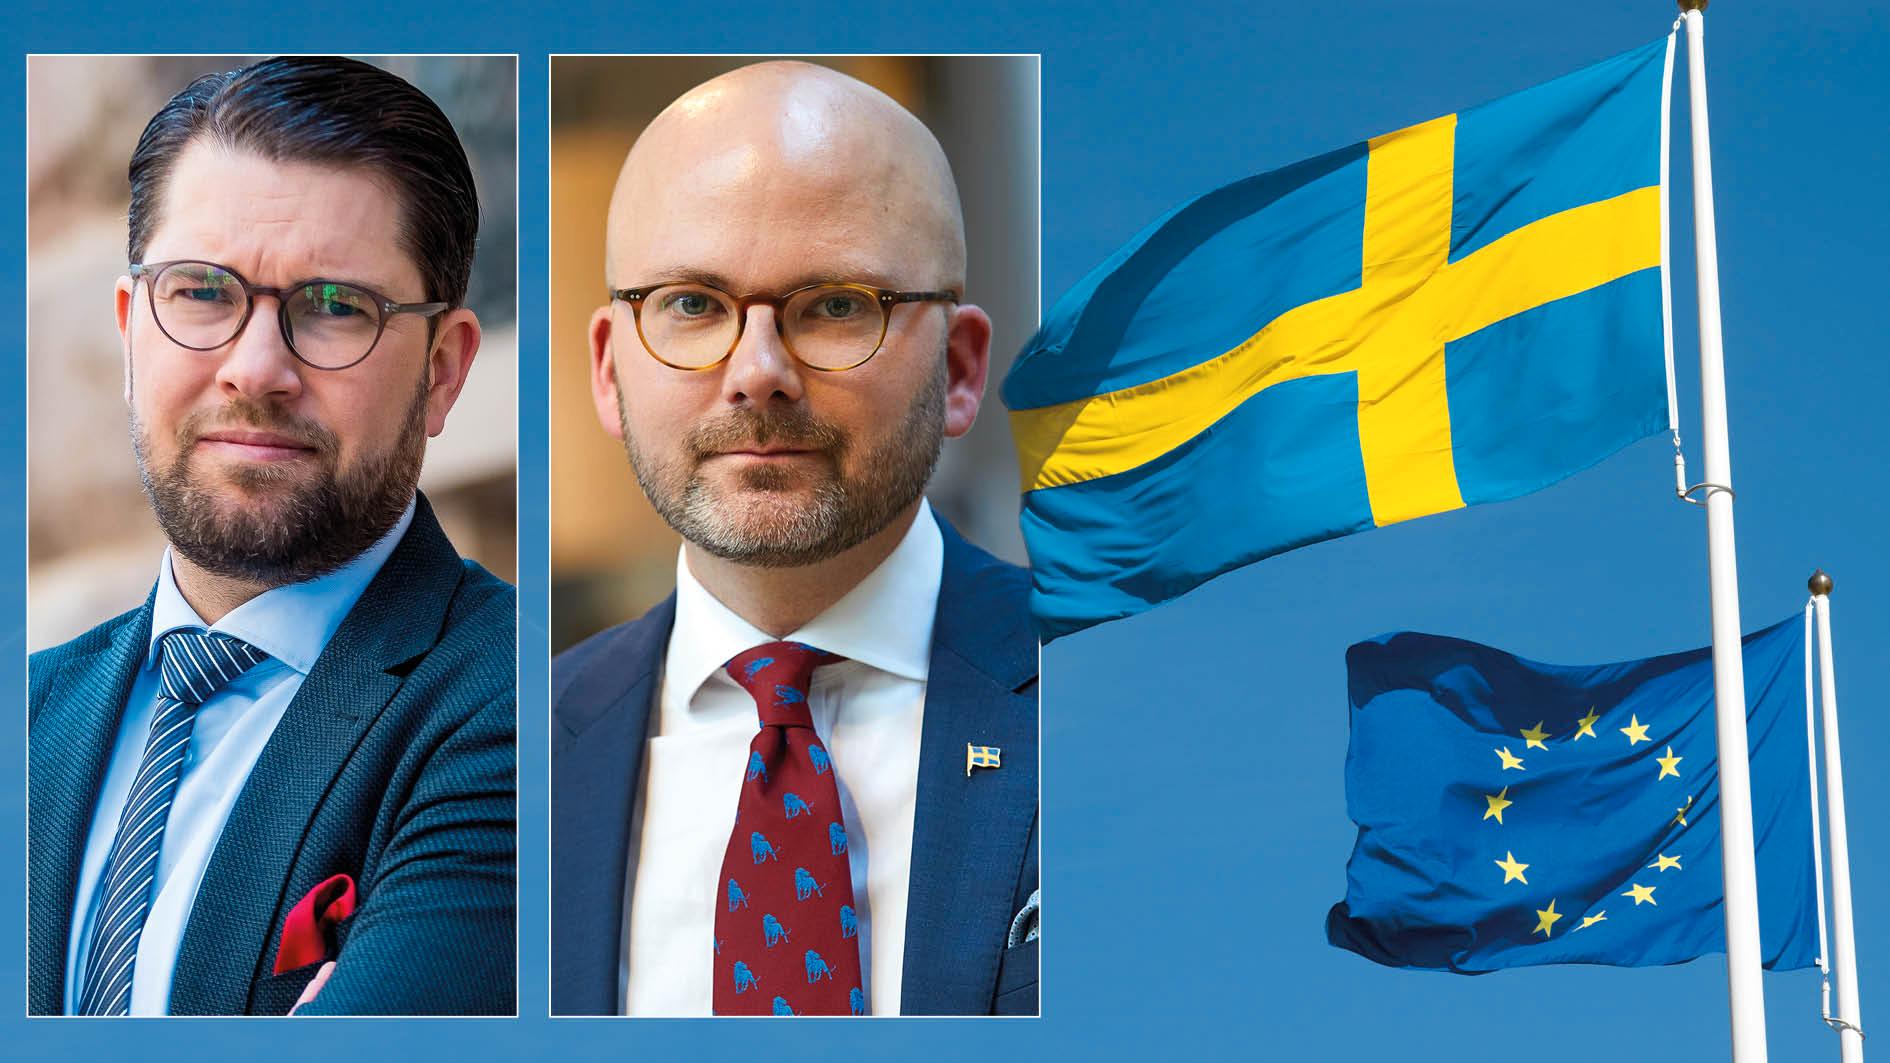 Vårt mål är en omläggning av europapolitiken på samma sätt och med samma medel som vi vann debatten om migrationspolitiken. Genom att ta de andra partiernas mandat, skriver Jimmie Åkesson och Charlie Weimers, Sverigedemokraterna.